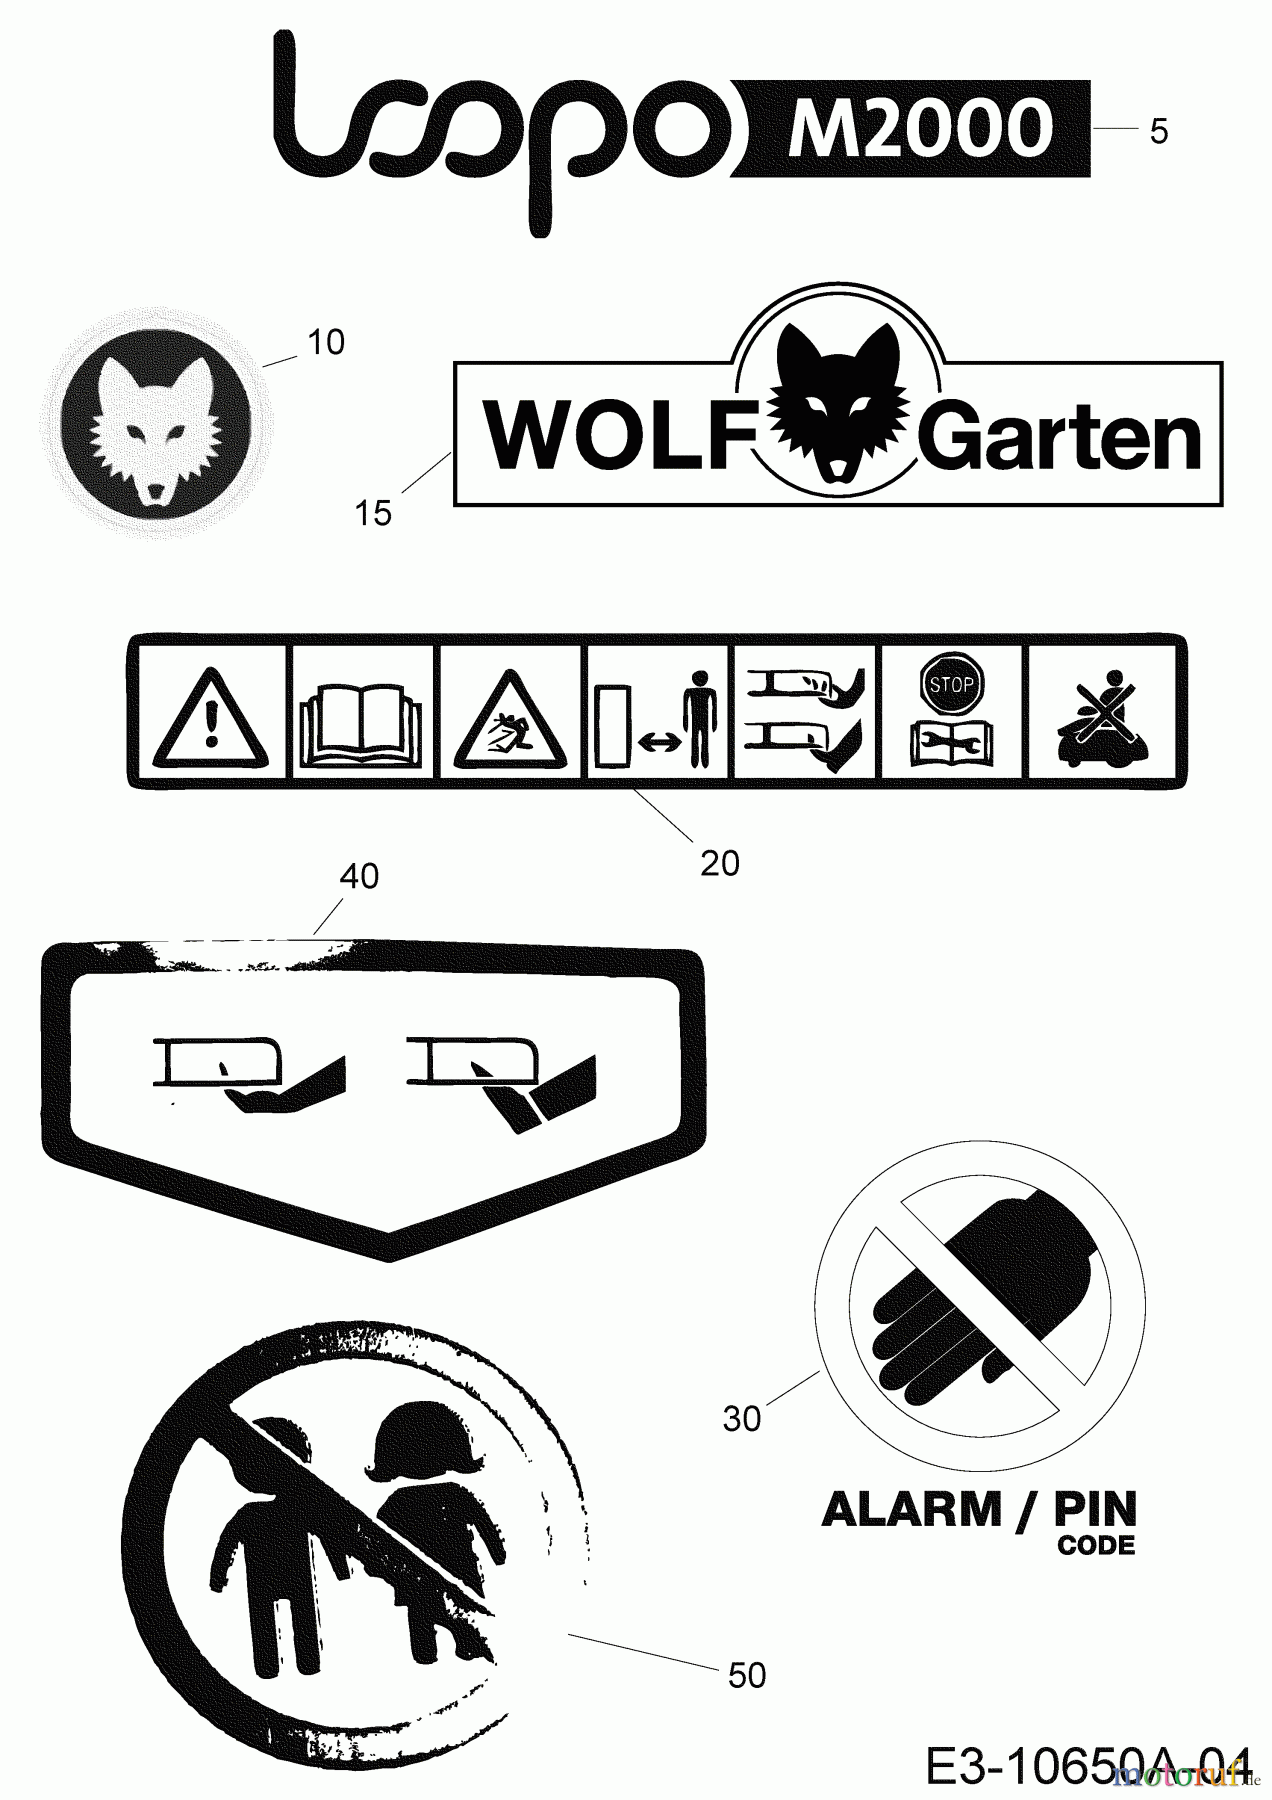  Wolf-Garten Mähroboter Loopo M2000 22CCFAEA650 (2020) Aufkleber